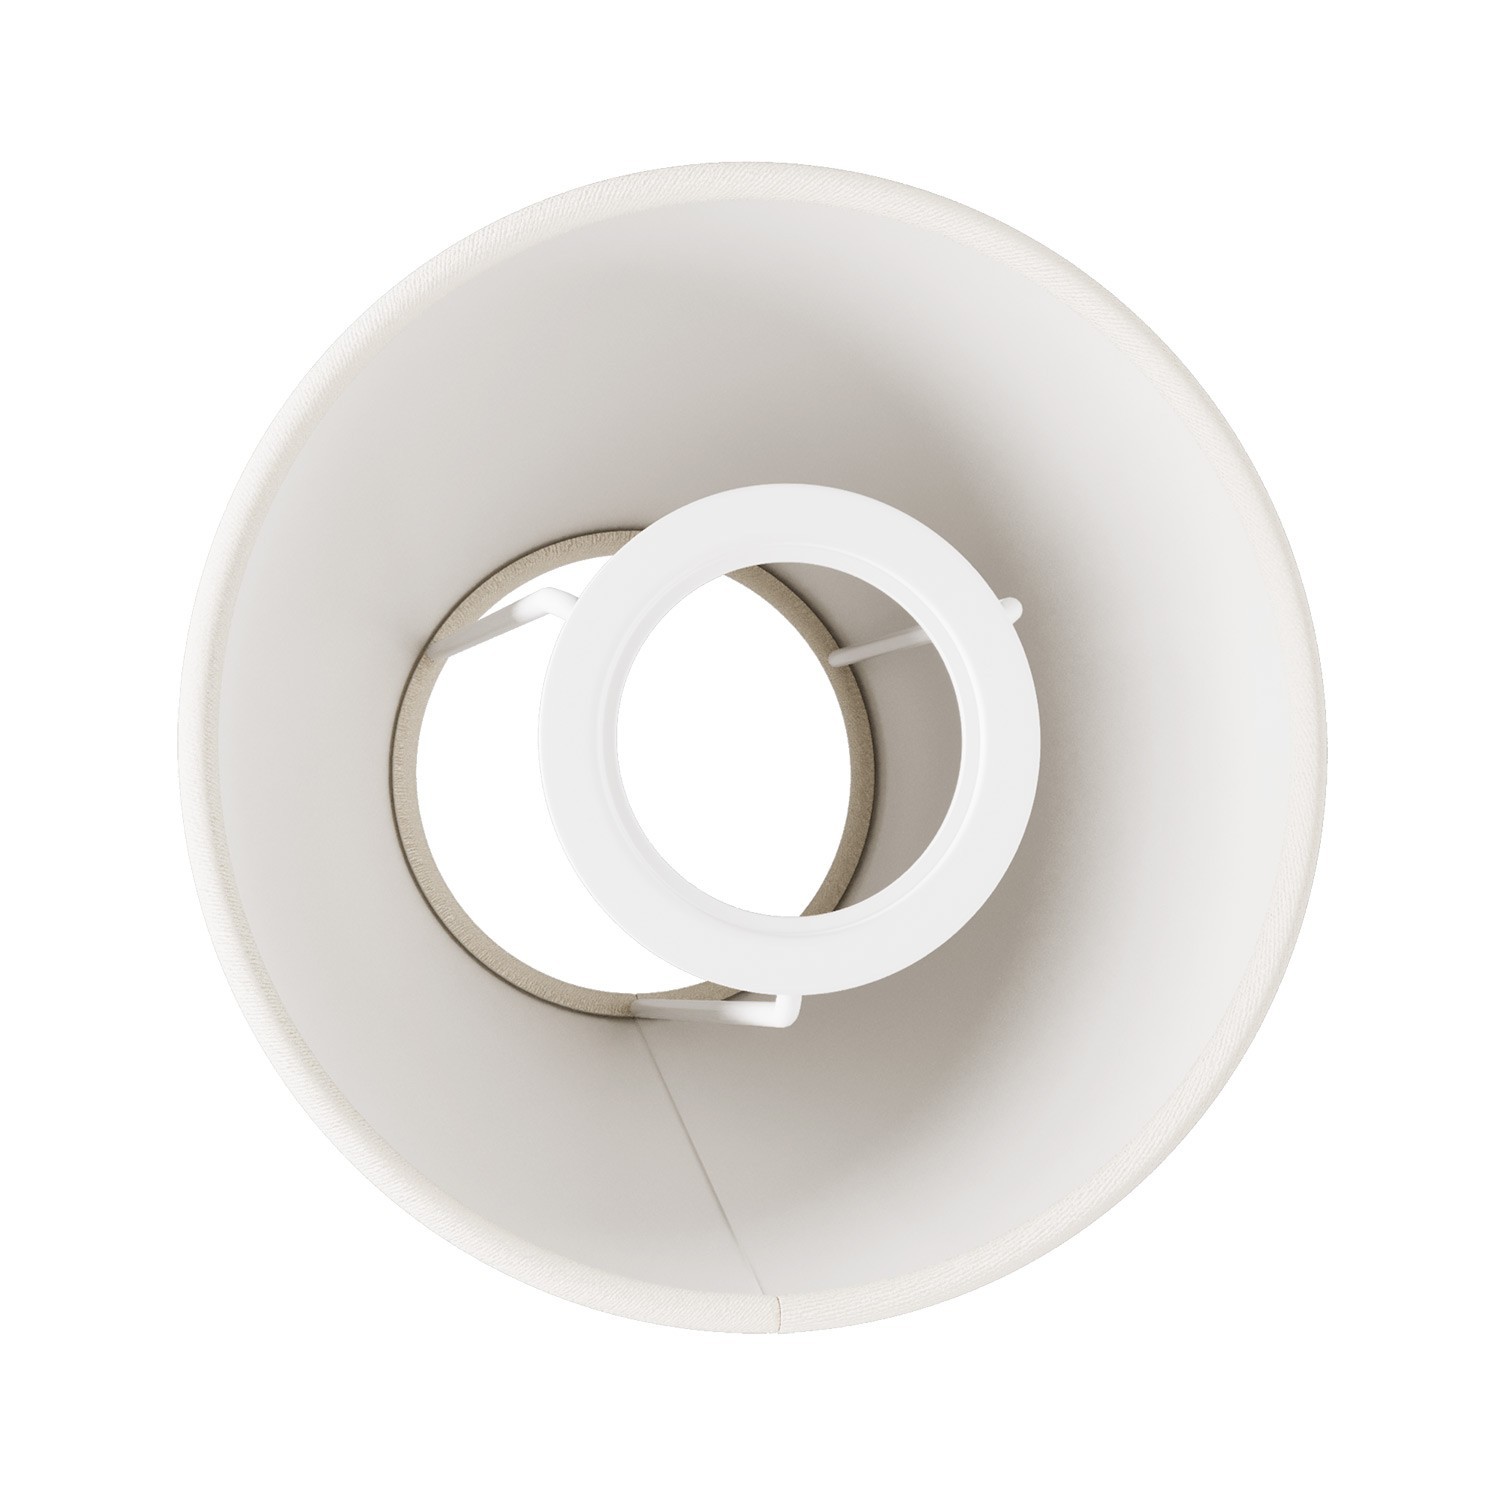 Mini Pantalla Impero con casquillo E27 para lámpara de mesa o aplique